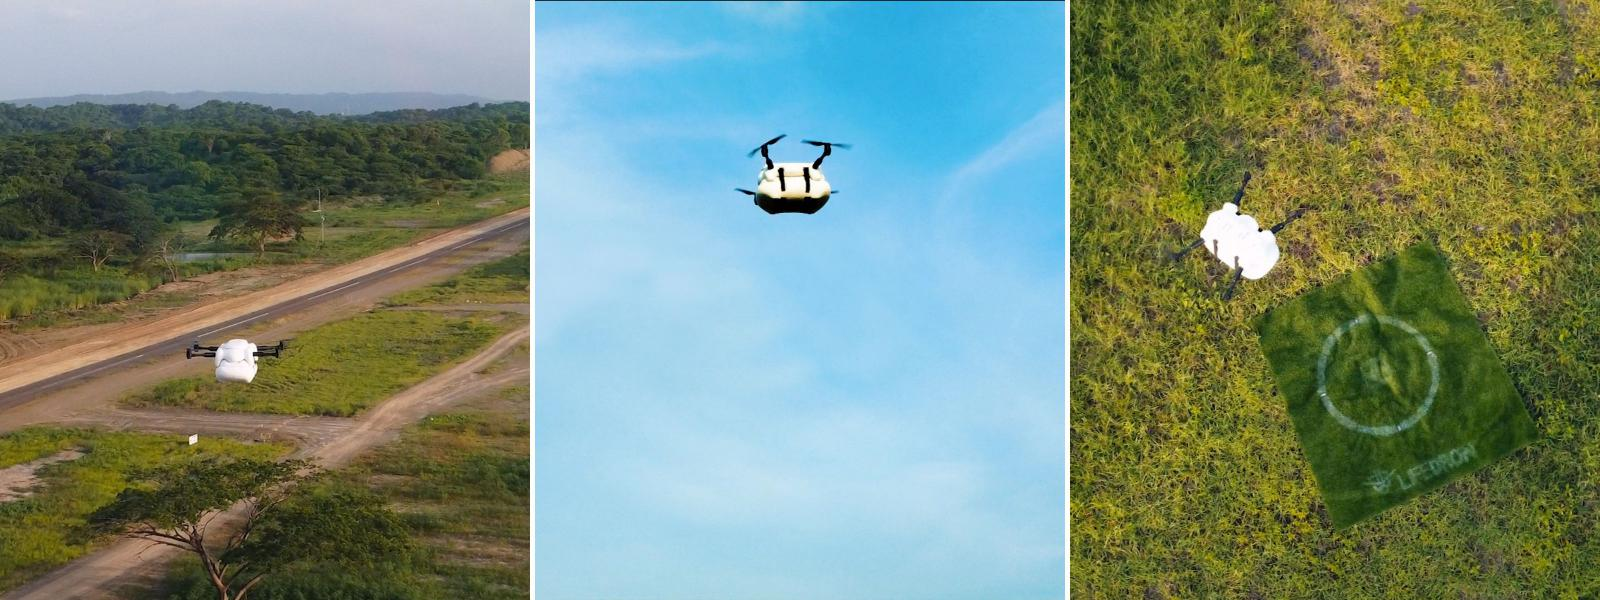 Los drones son un medio eficiente para realizar deliverys